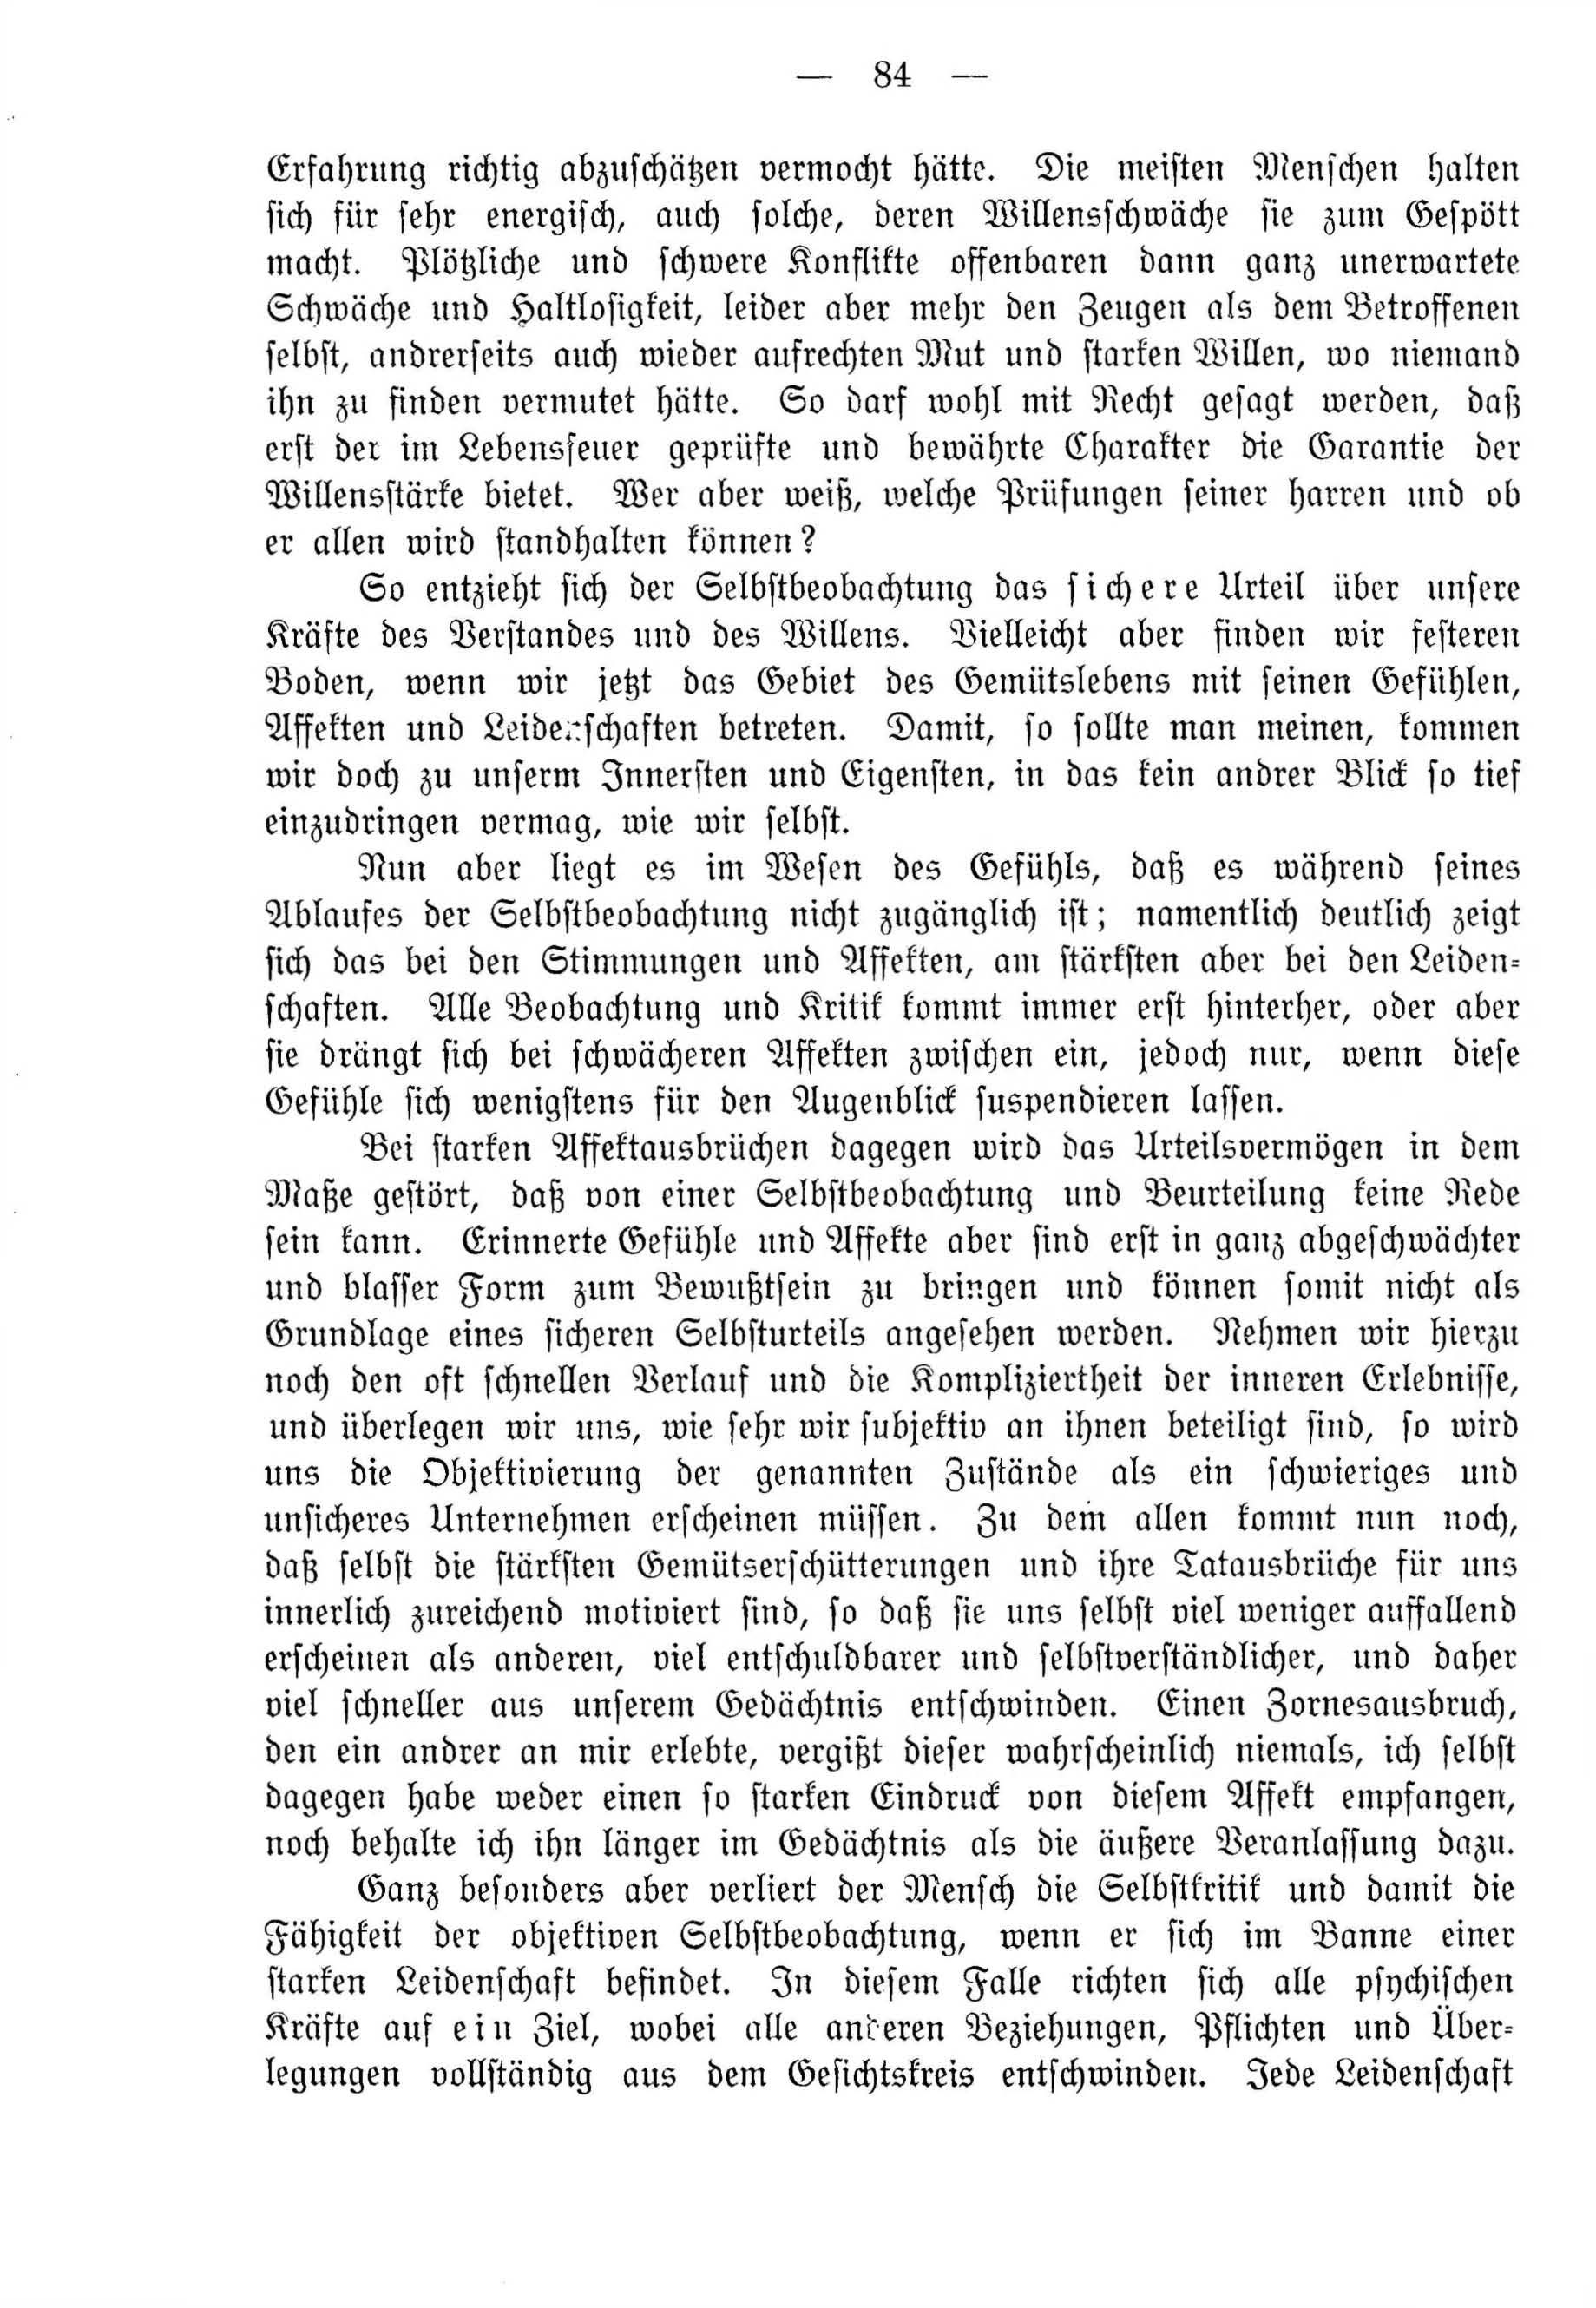 Deutsche Monatsschrift für Russland [4] (1915) | 84. (84) Haupttext